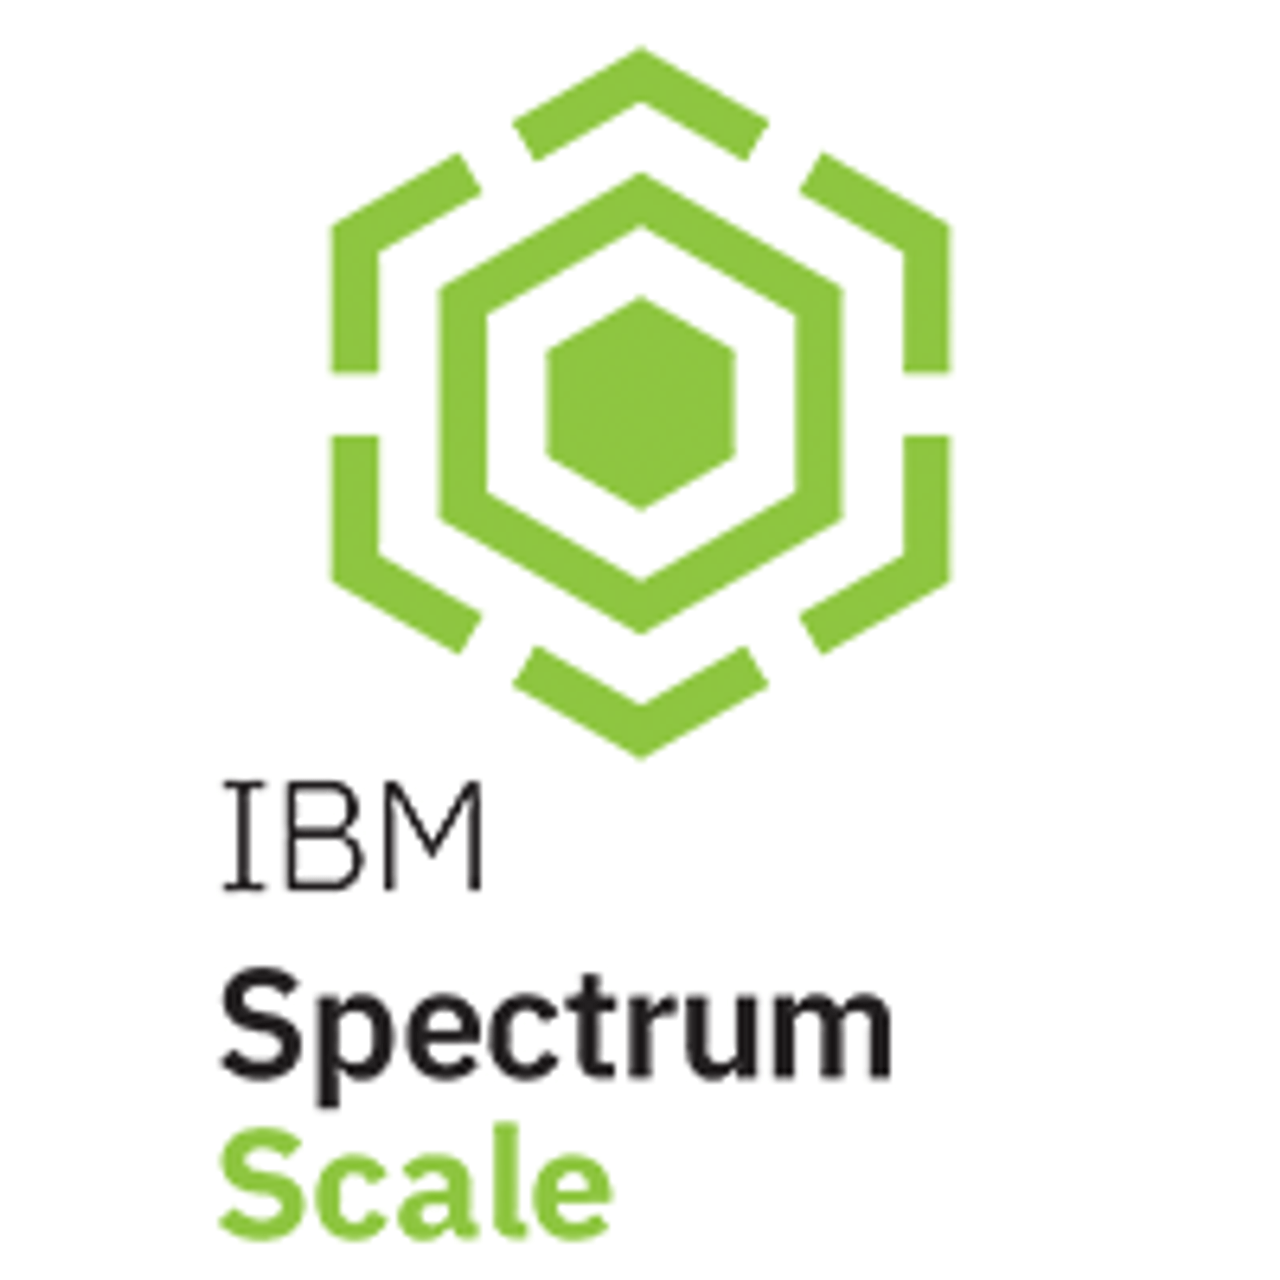 D1VM0LL|Spectrum-Scale-Terabyte|12M